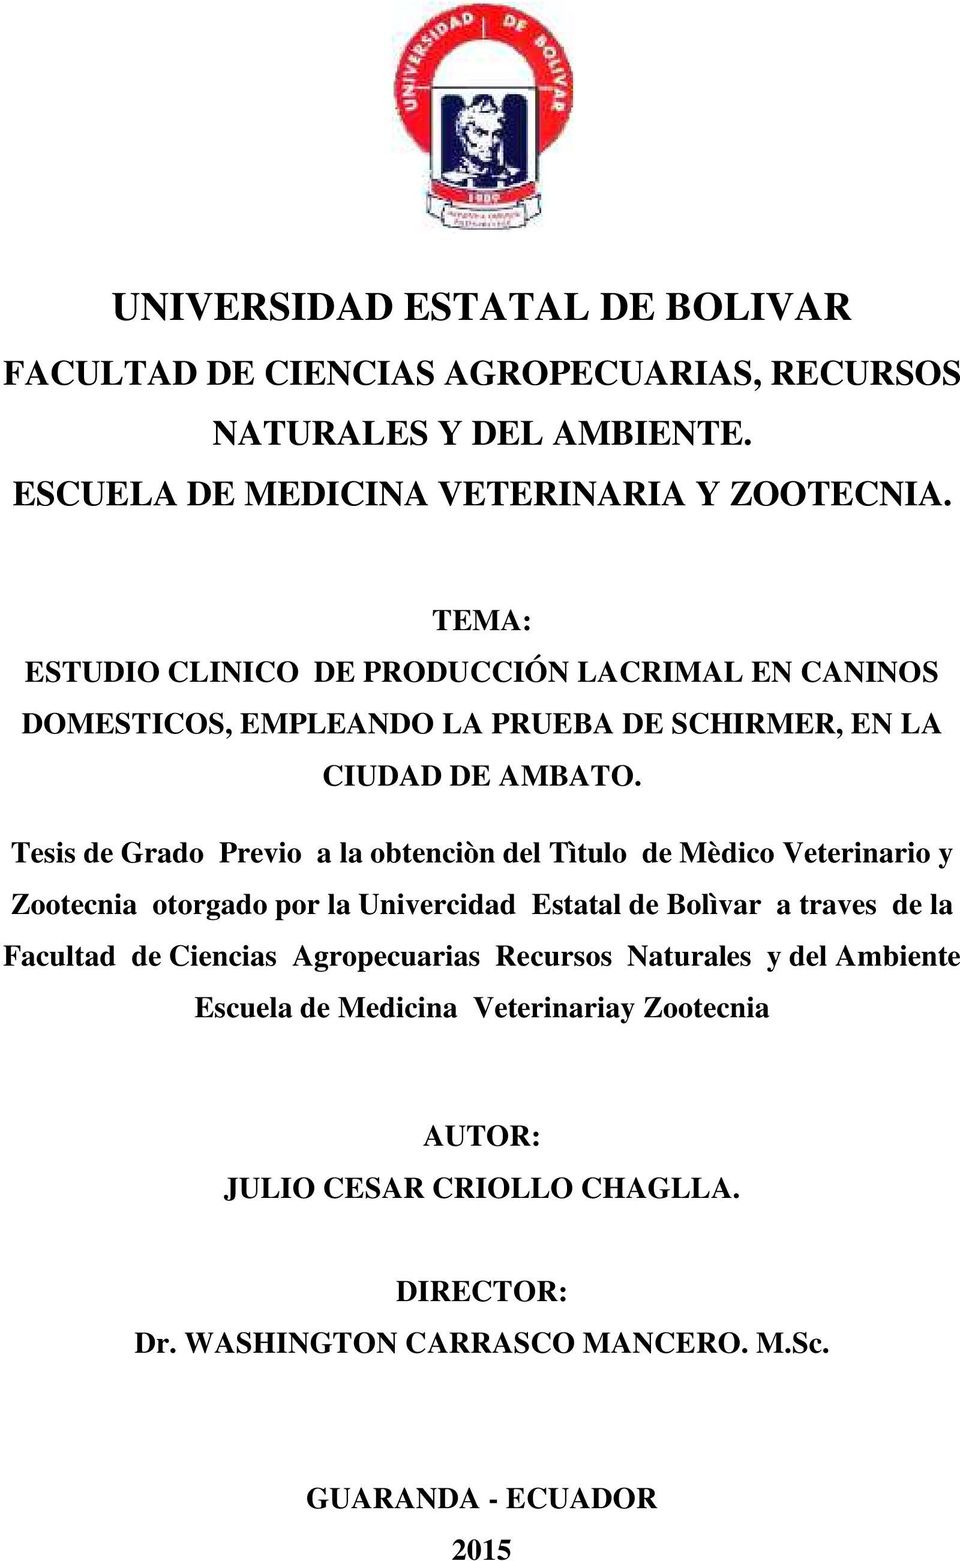 Tesis de Grado Previo a la obtenciòn del Tìtulo de Mèdico Veterinario y Zootecnia otorgado por la Univercidad Estatal de Bolìvar a traves de la Facultad de